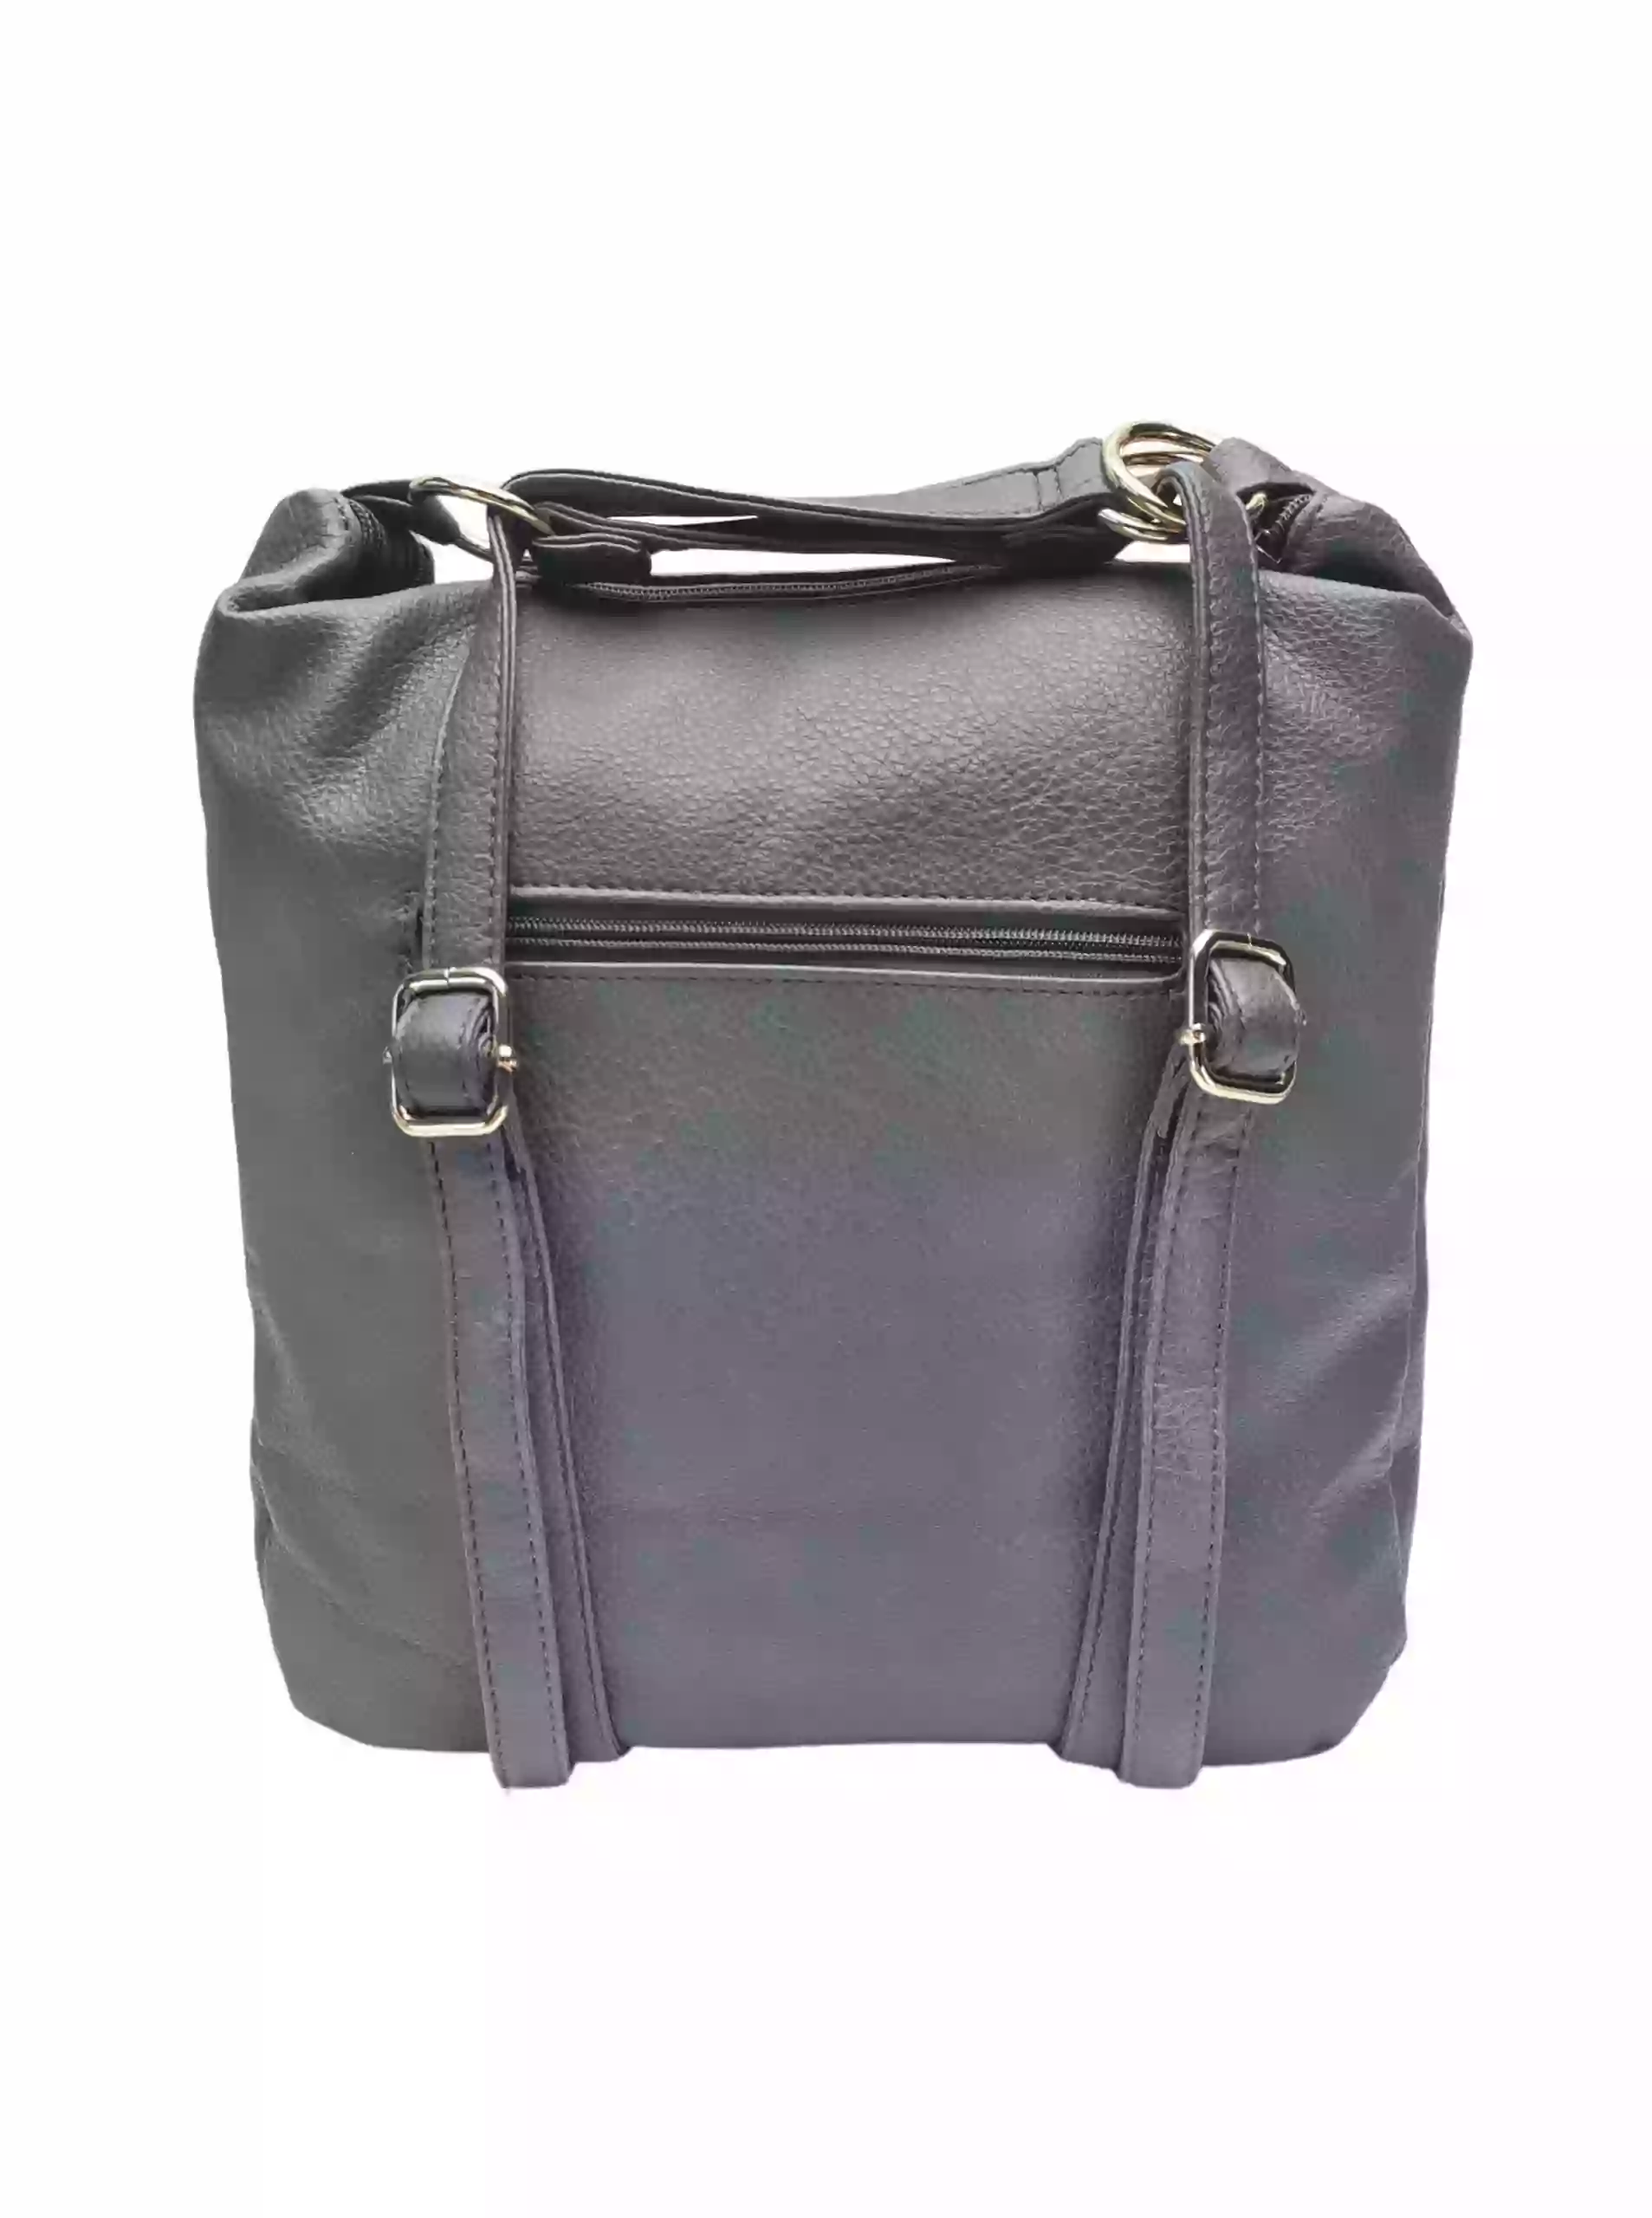 Velký středně šedý kabelko-batoh 2v1 s kapsou, Int. Company, H23, zadní strana kabelko-batohu s popruhy